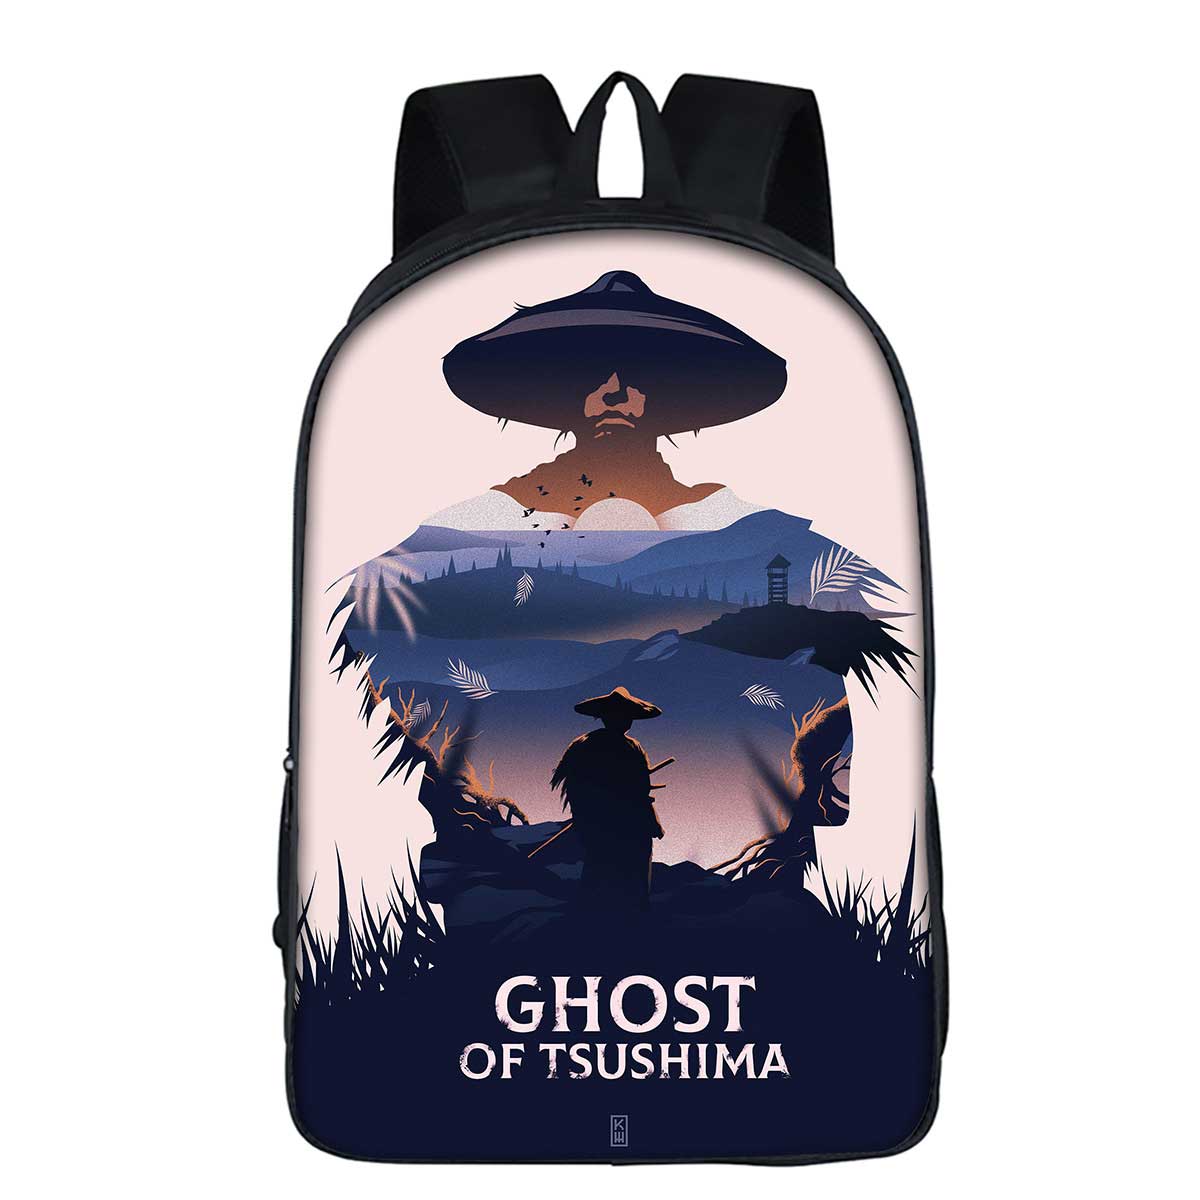 Ghost Cartable de Tsushima JIn Sakai Voyage Sac à dos pour ordinateur portable Fashion Casual pour Femmes filles Garçons hommes-Takerlama